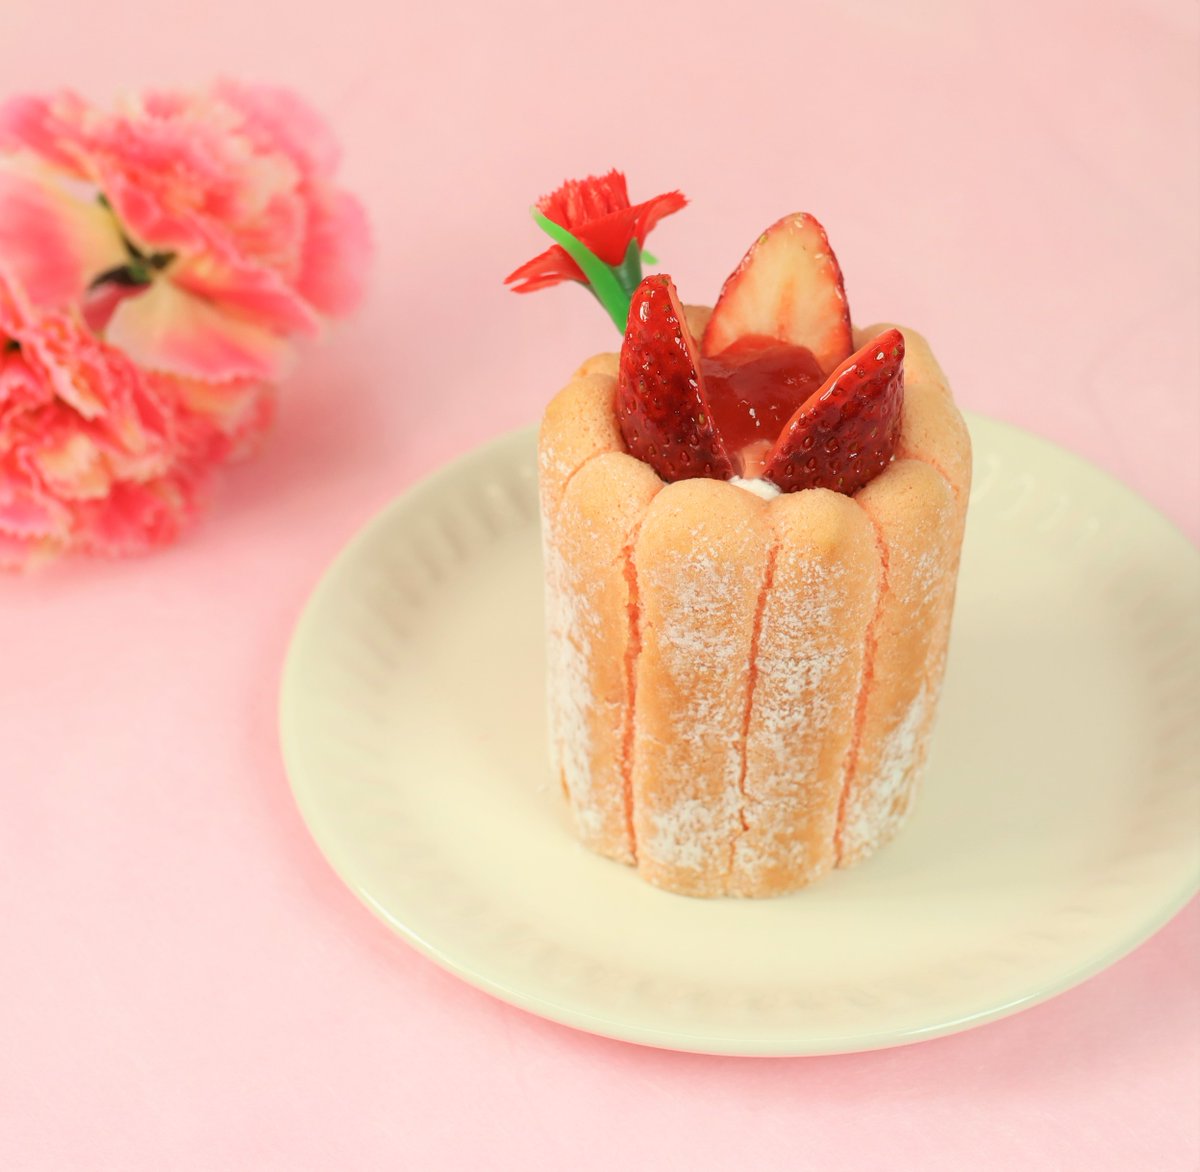 そして！不二家洋菓子店では、明日5月10日からお花をモチーフにした【母の日】商品が発売されます！ 詳しくは不二家洋菓子店公式X @Fujiya_Yougashi をチェックしてください！ x.com/fujiya_yougashi #素のまんま